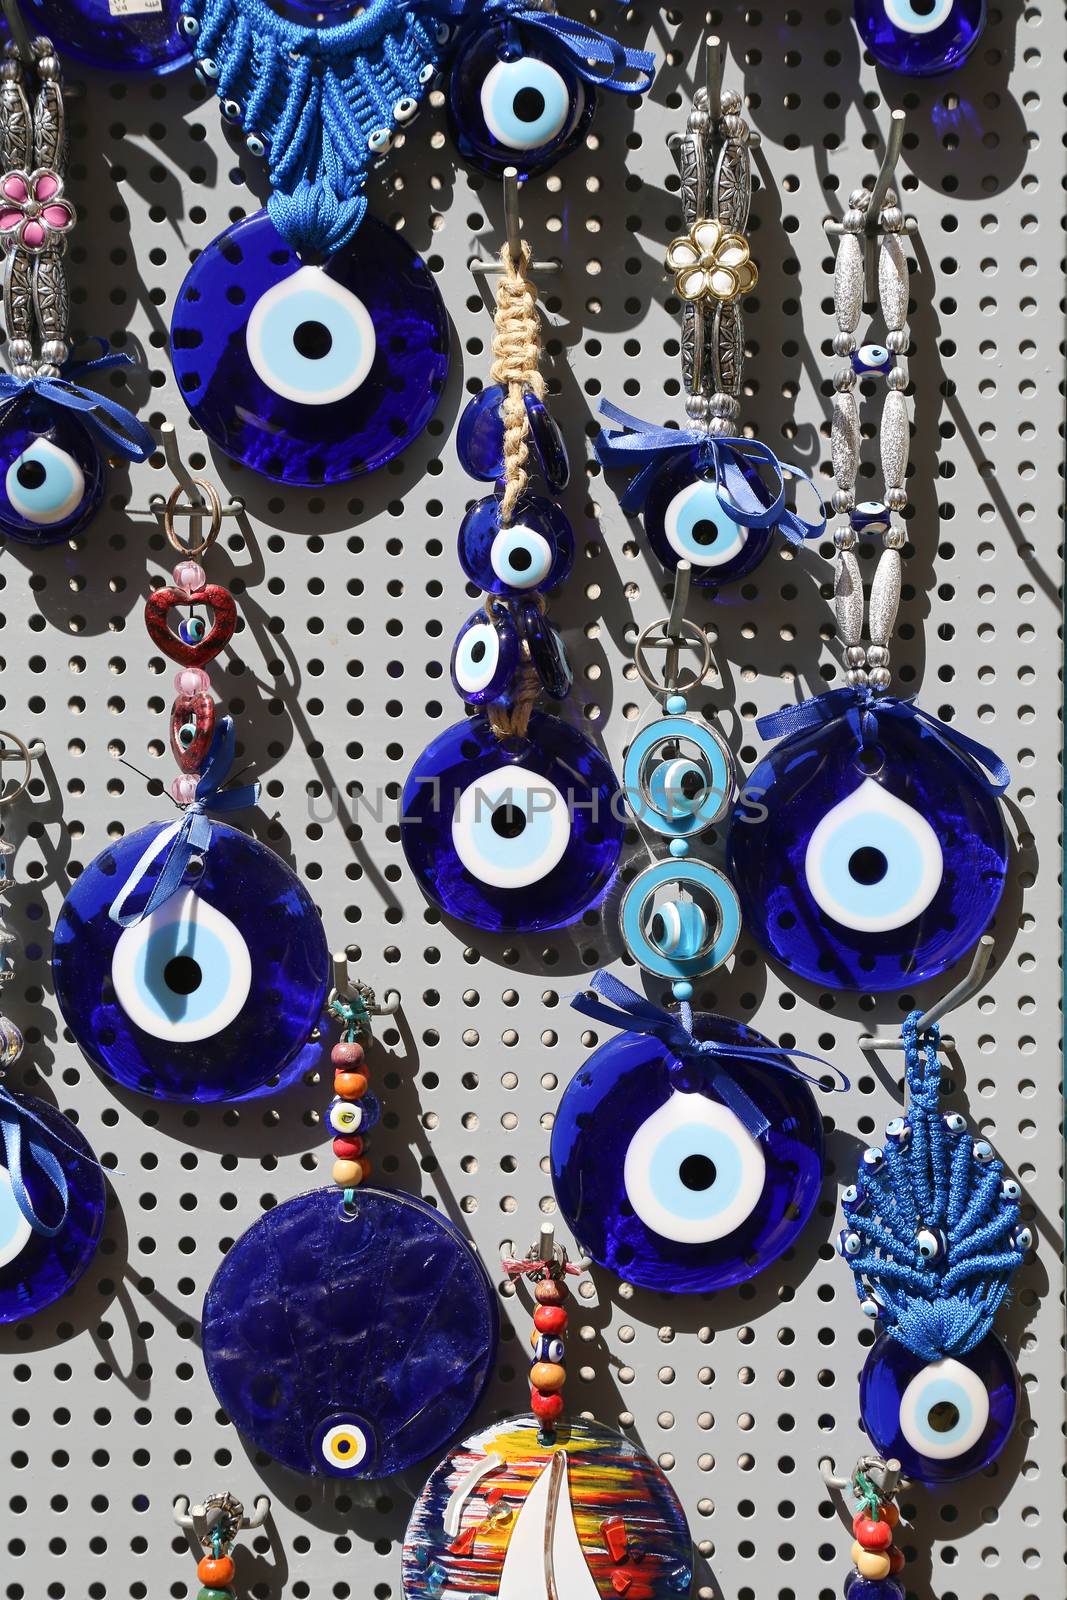 Blue Evil Eye souvenir sold in a Greek souvenir shop